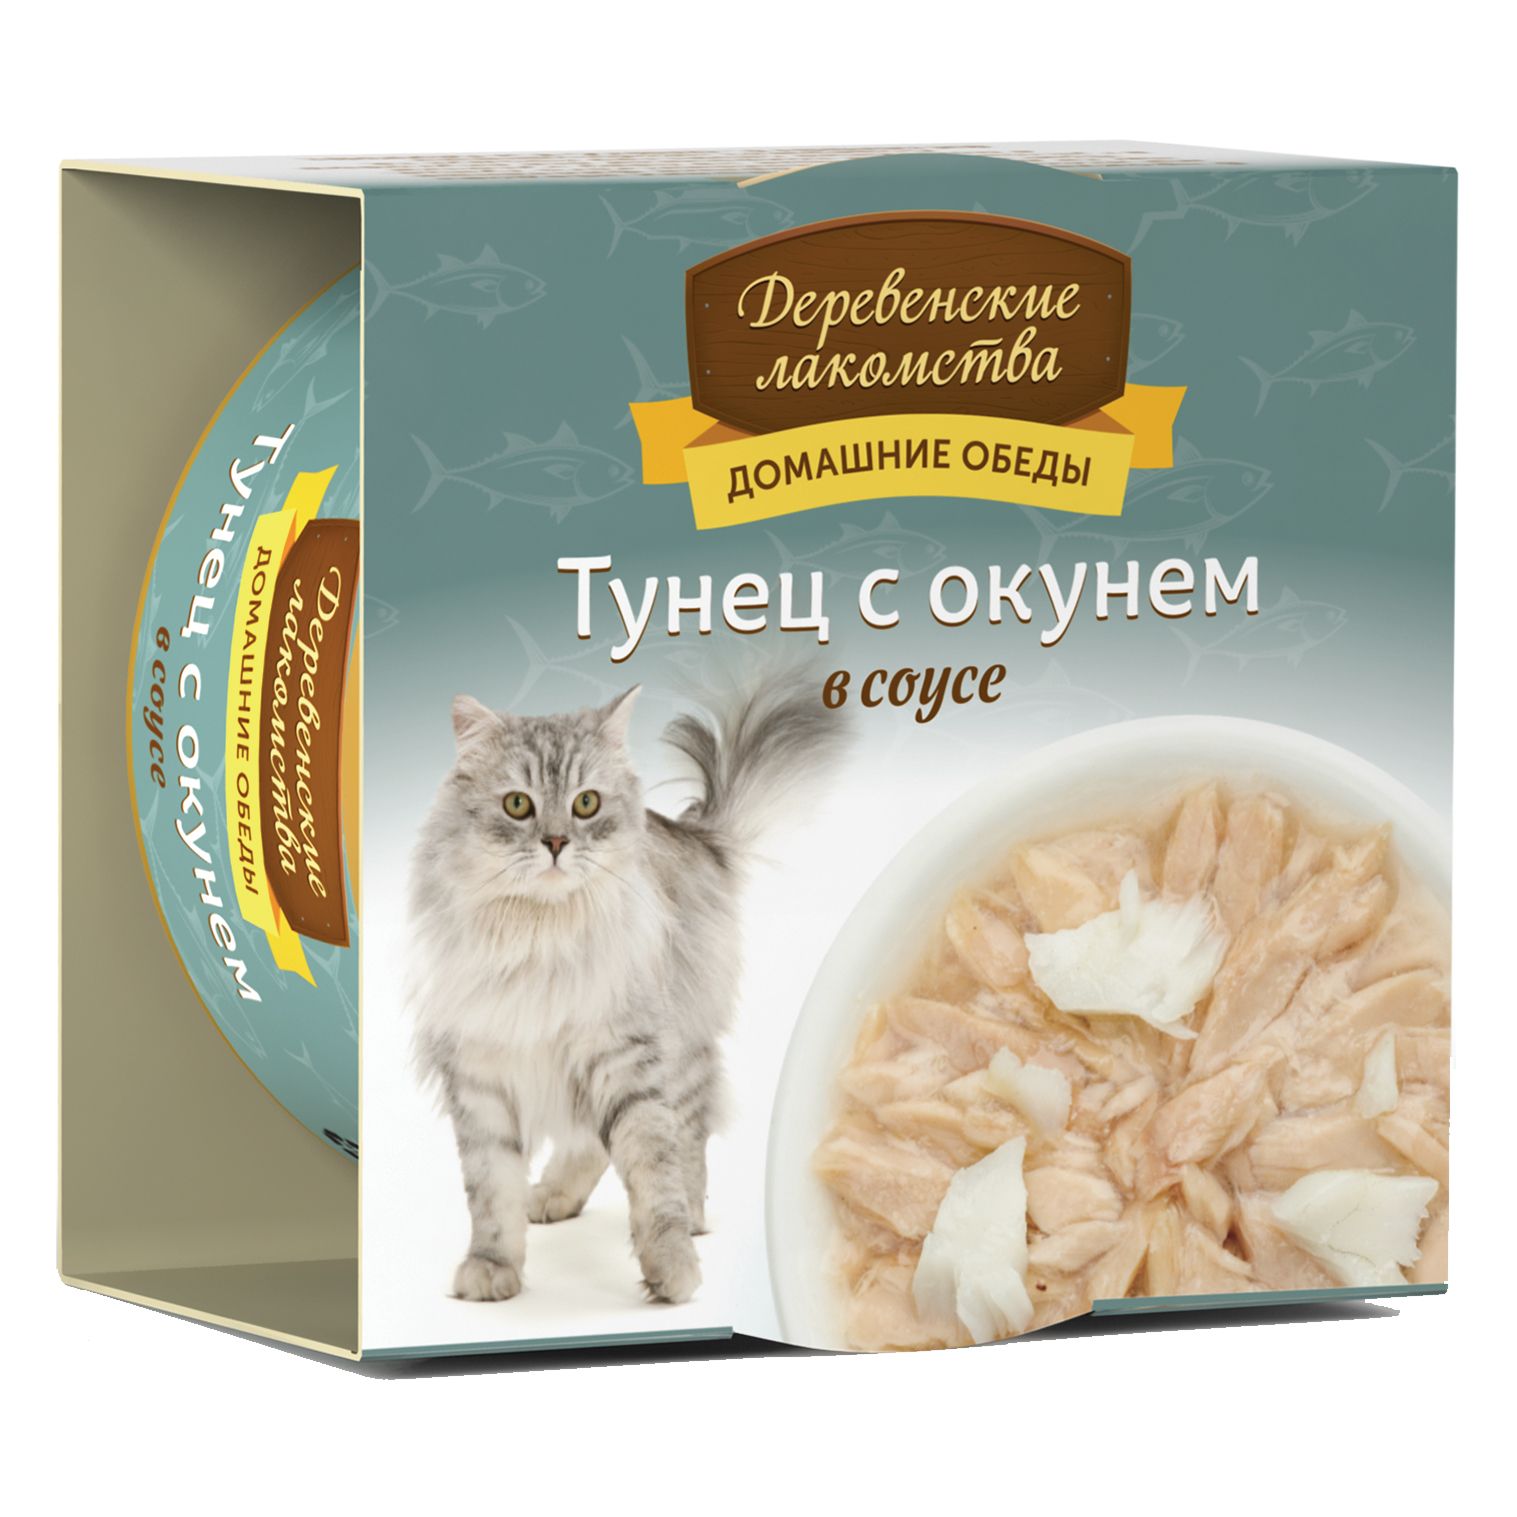 Деревенские лакомства Тунец/Окунь консервы для кошек 80 г 2